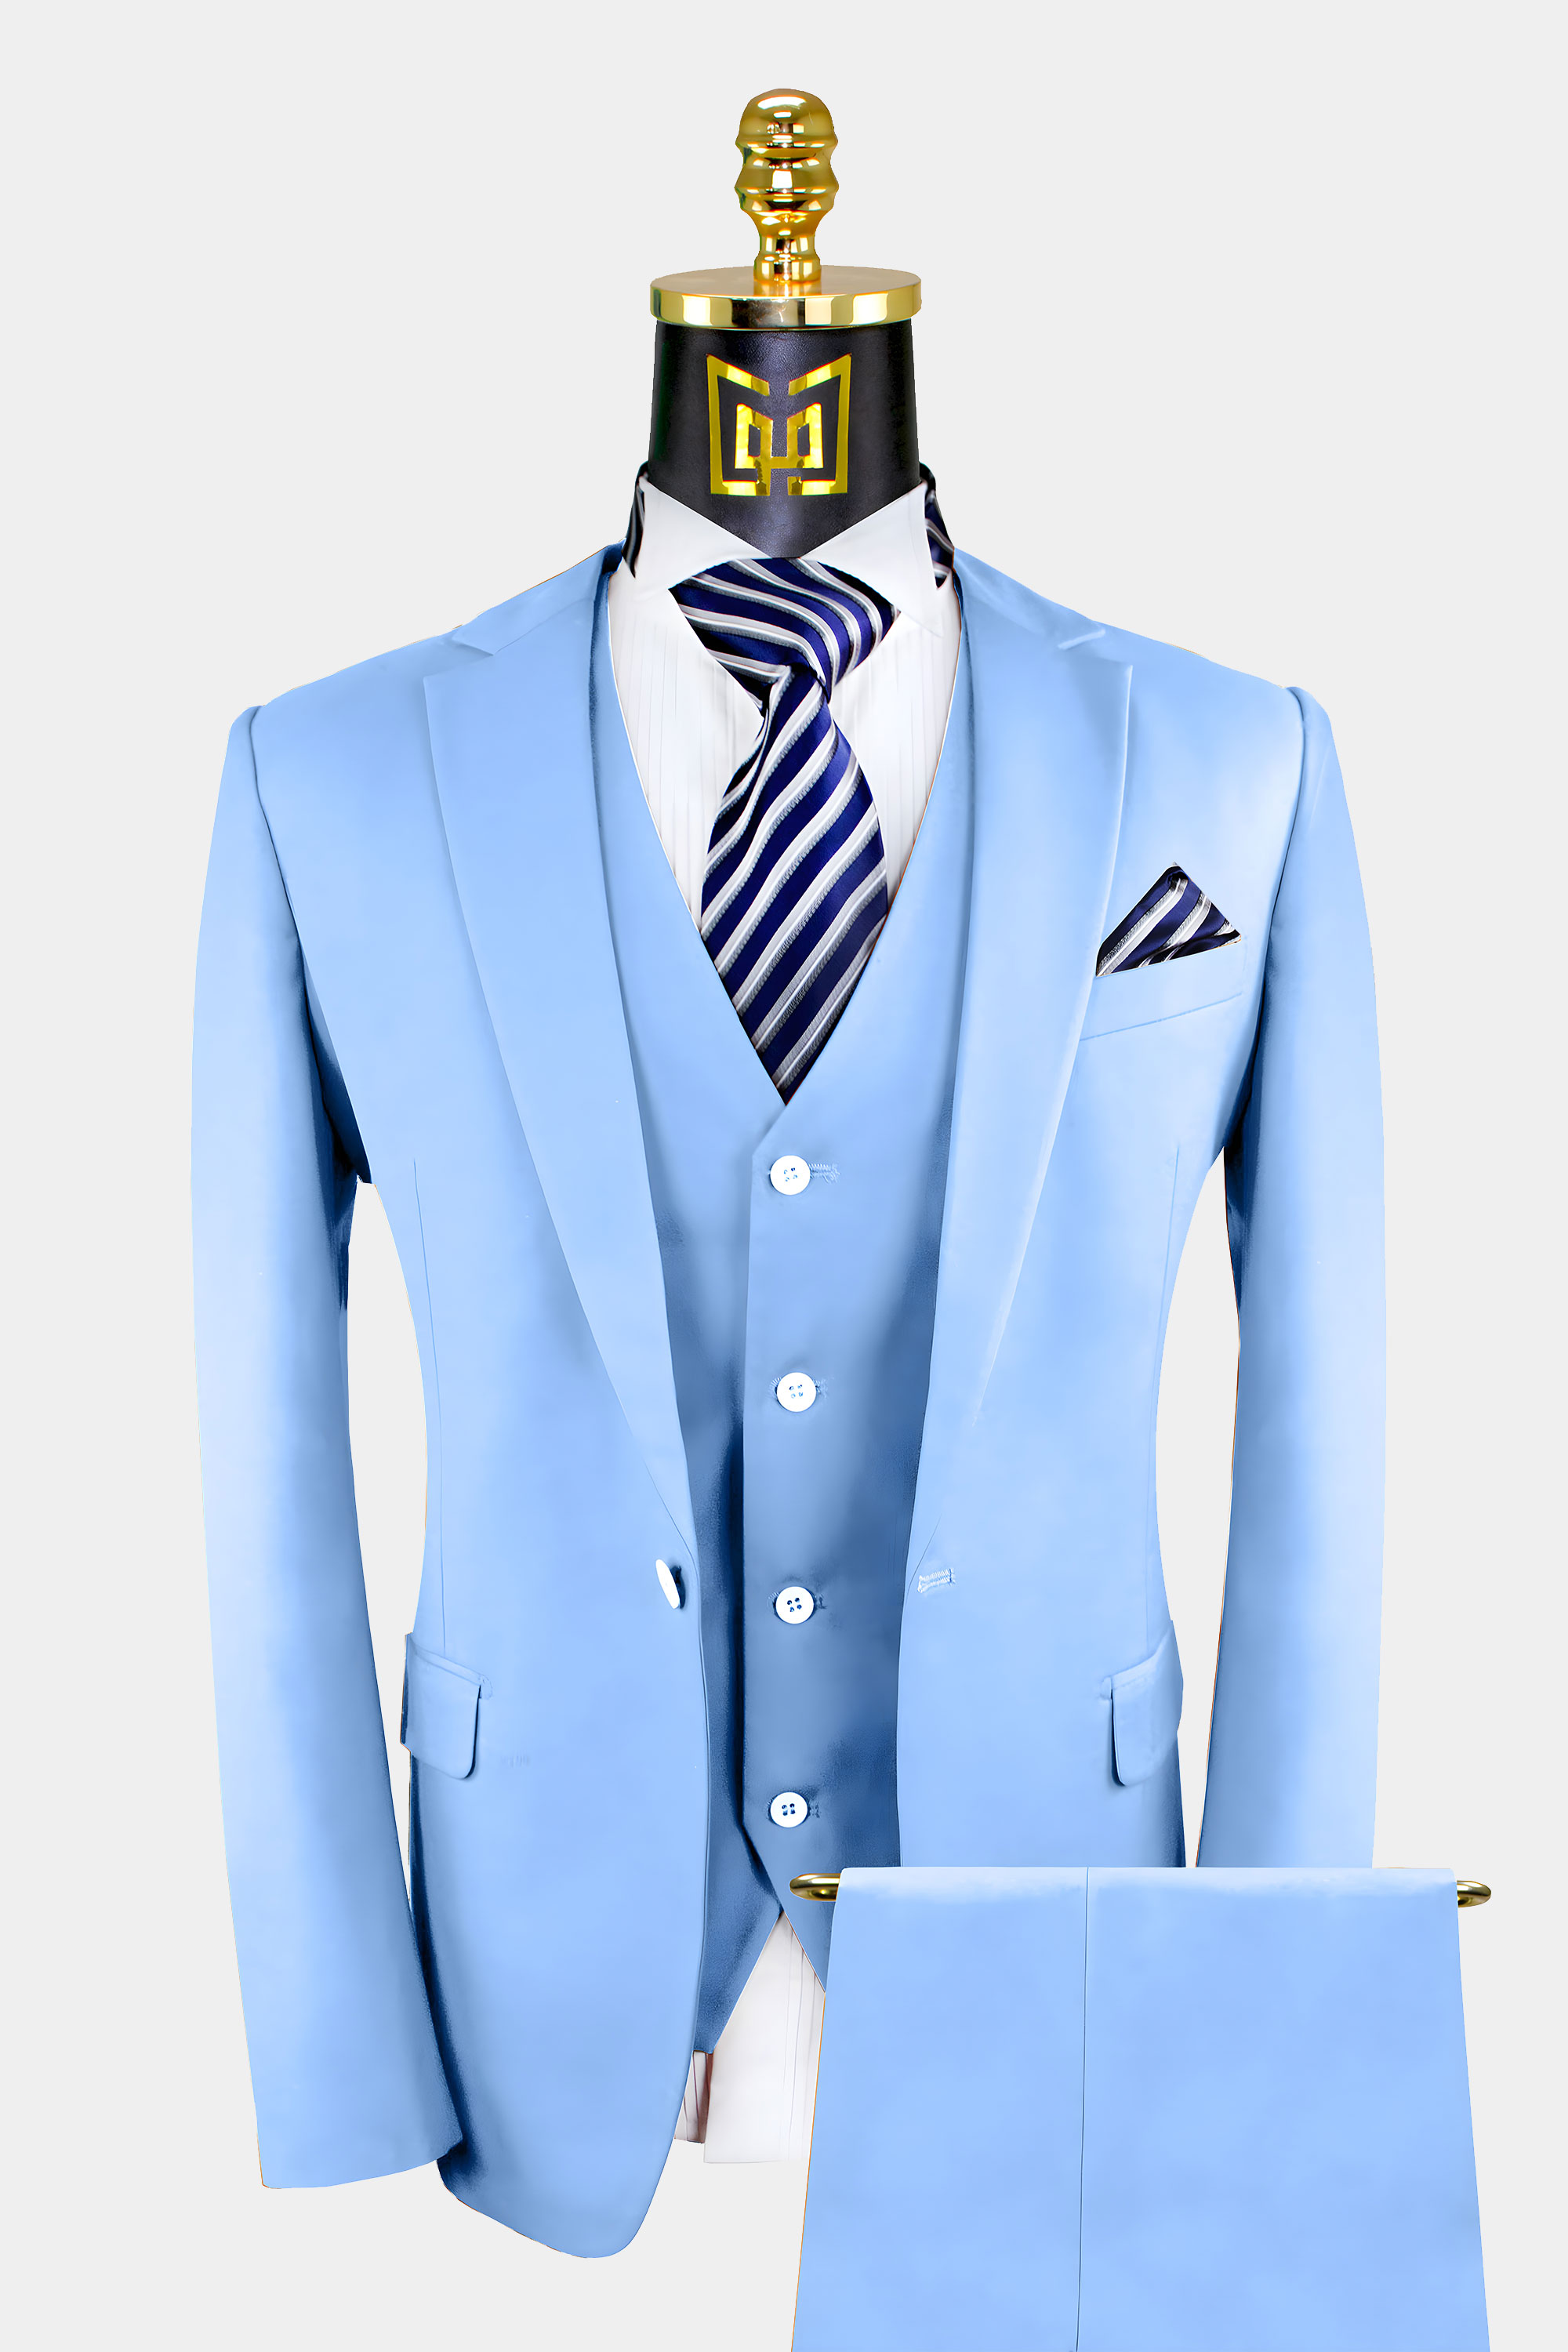 Mens-Sky-Blue-Suit-Wedding-Groom-Prom-Tuxedo-from-Gentlemansguru.com